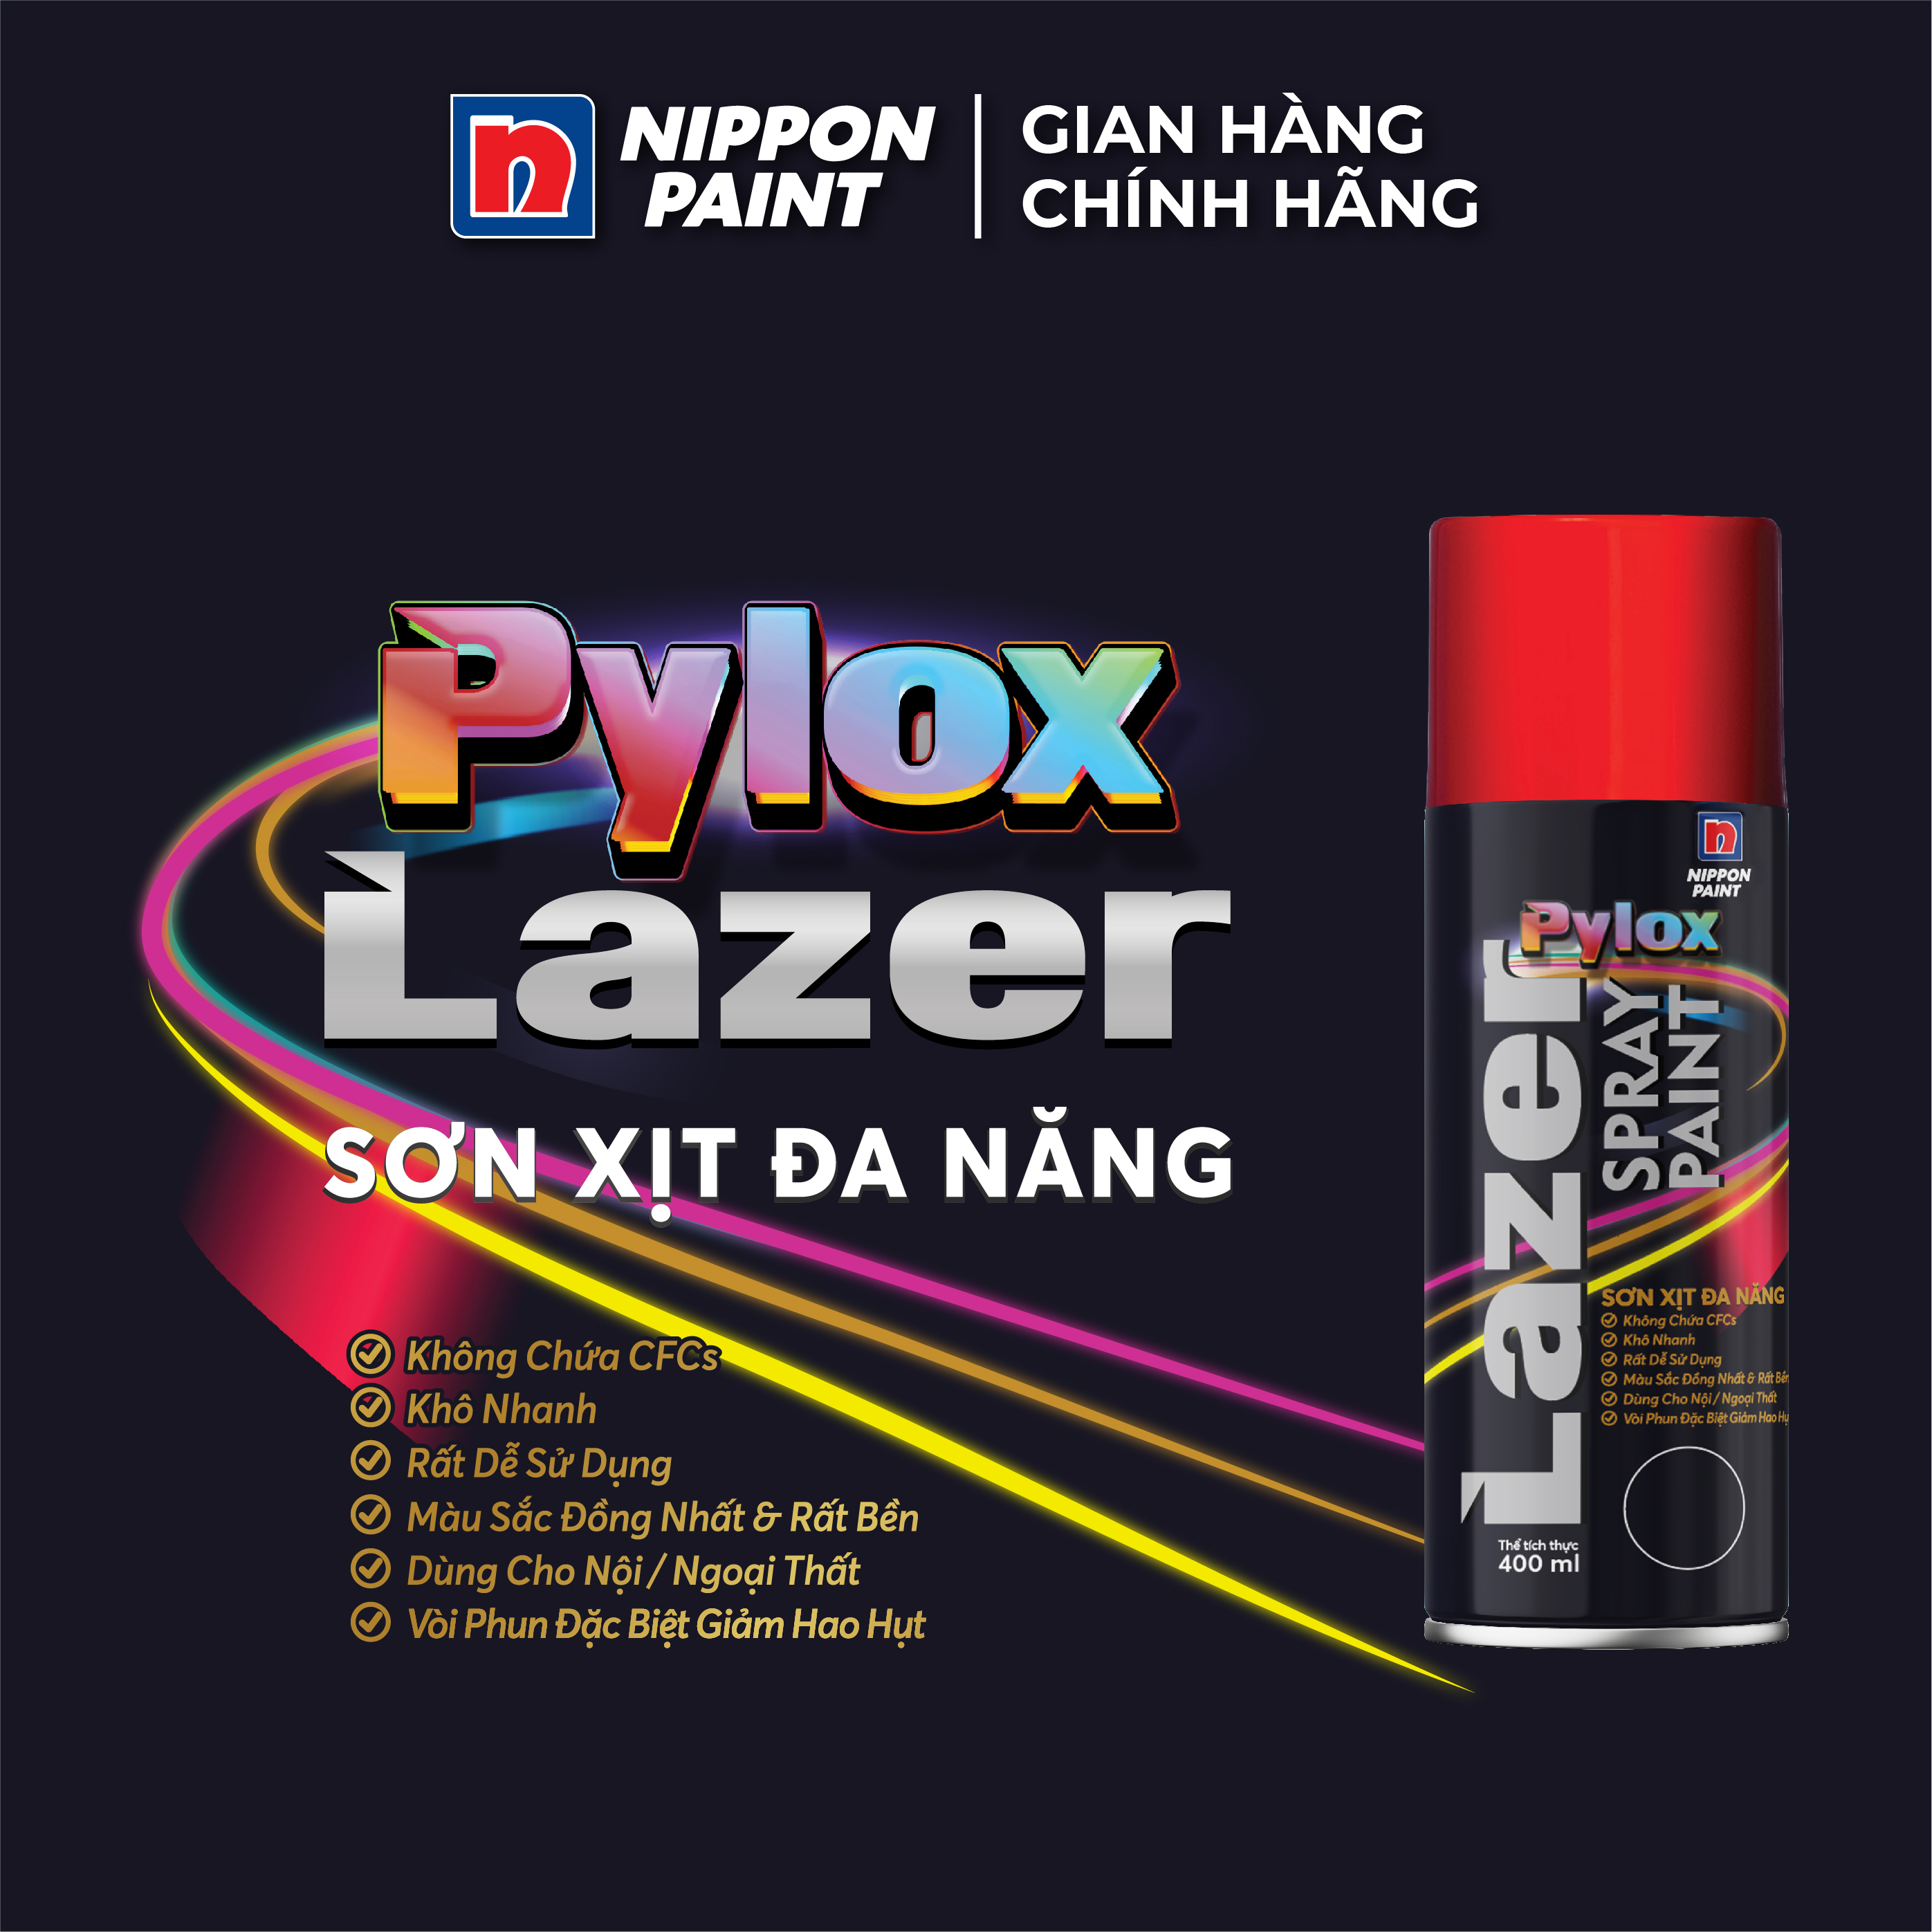 Hình ảnh Sơn xịt đa năng Pylox Lazer  -N200 WHITE - Chính hãng NIPPON PAINT - Dung tích 400ml